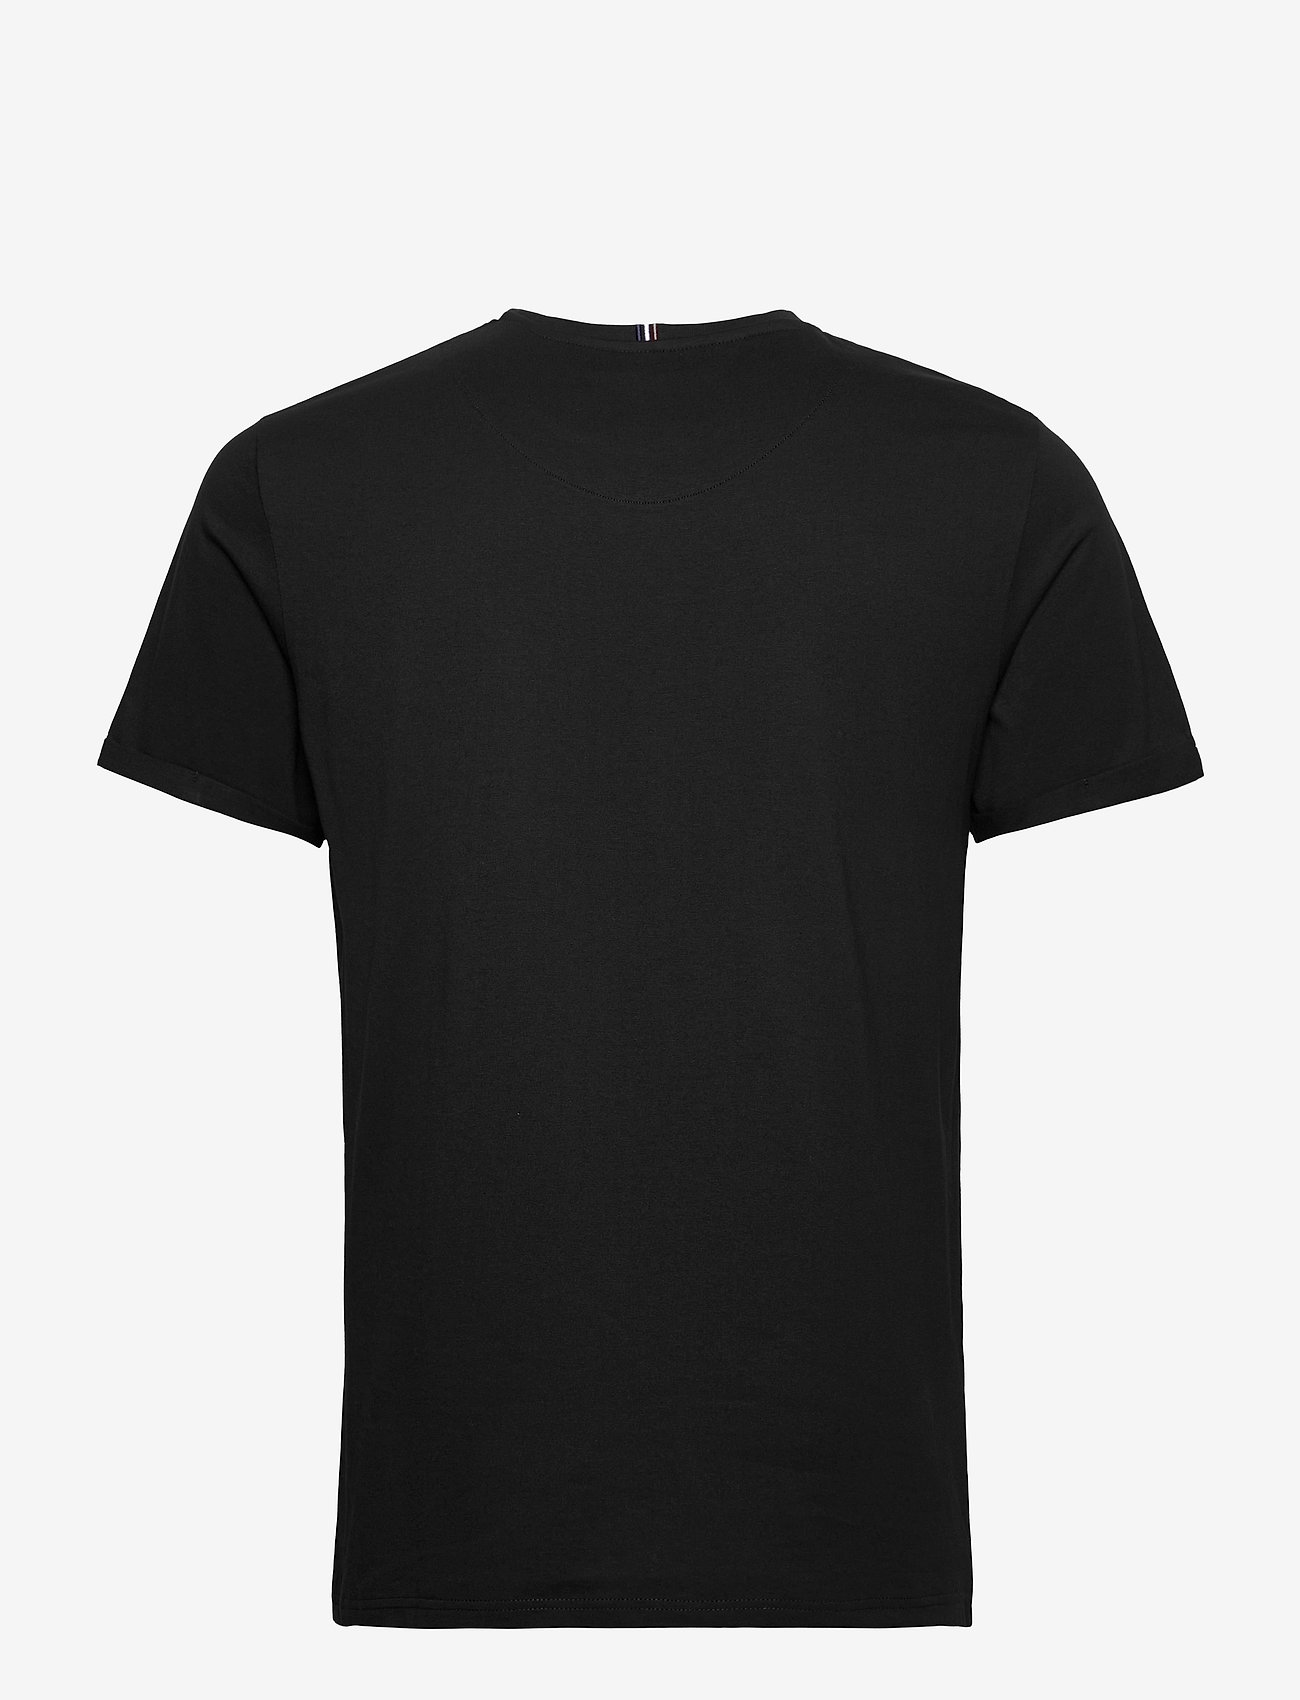 Les Deux Lens T-shirt (Black/white) - 349 kr | Boozt.com